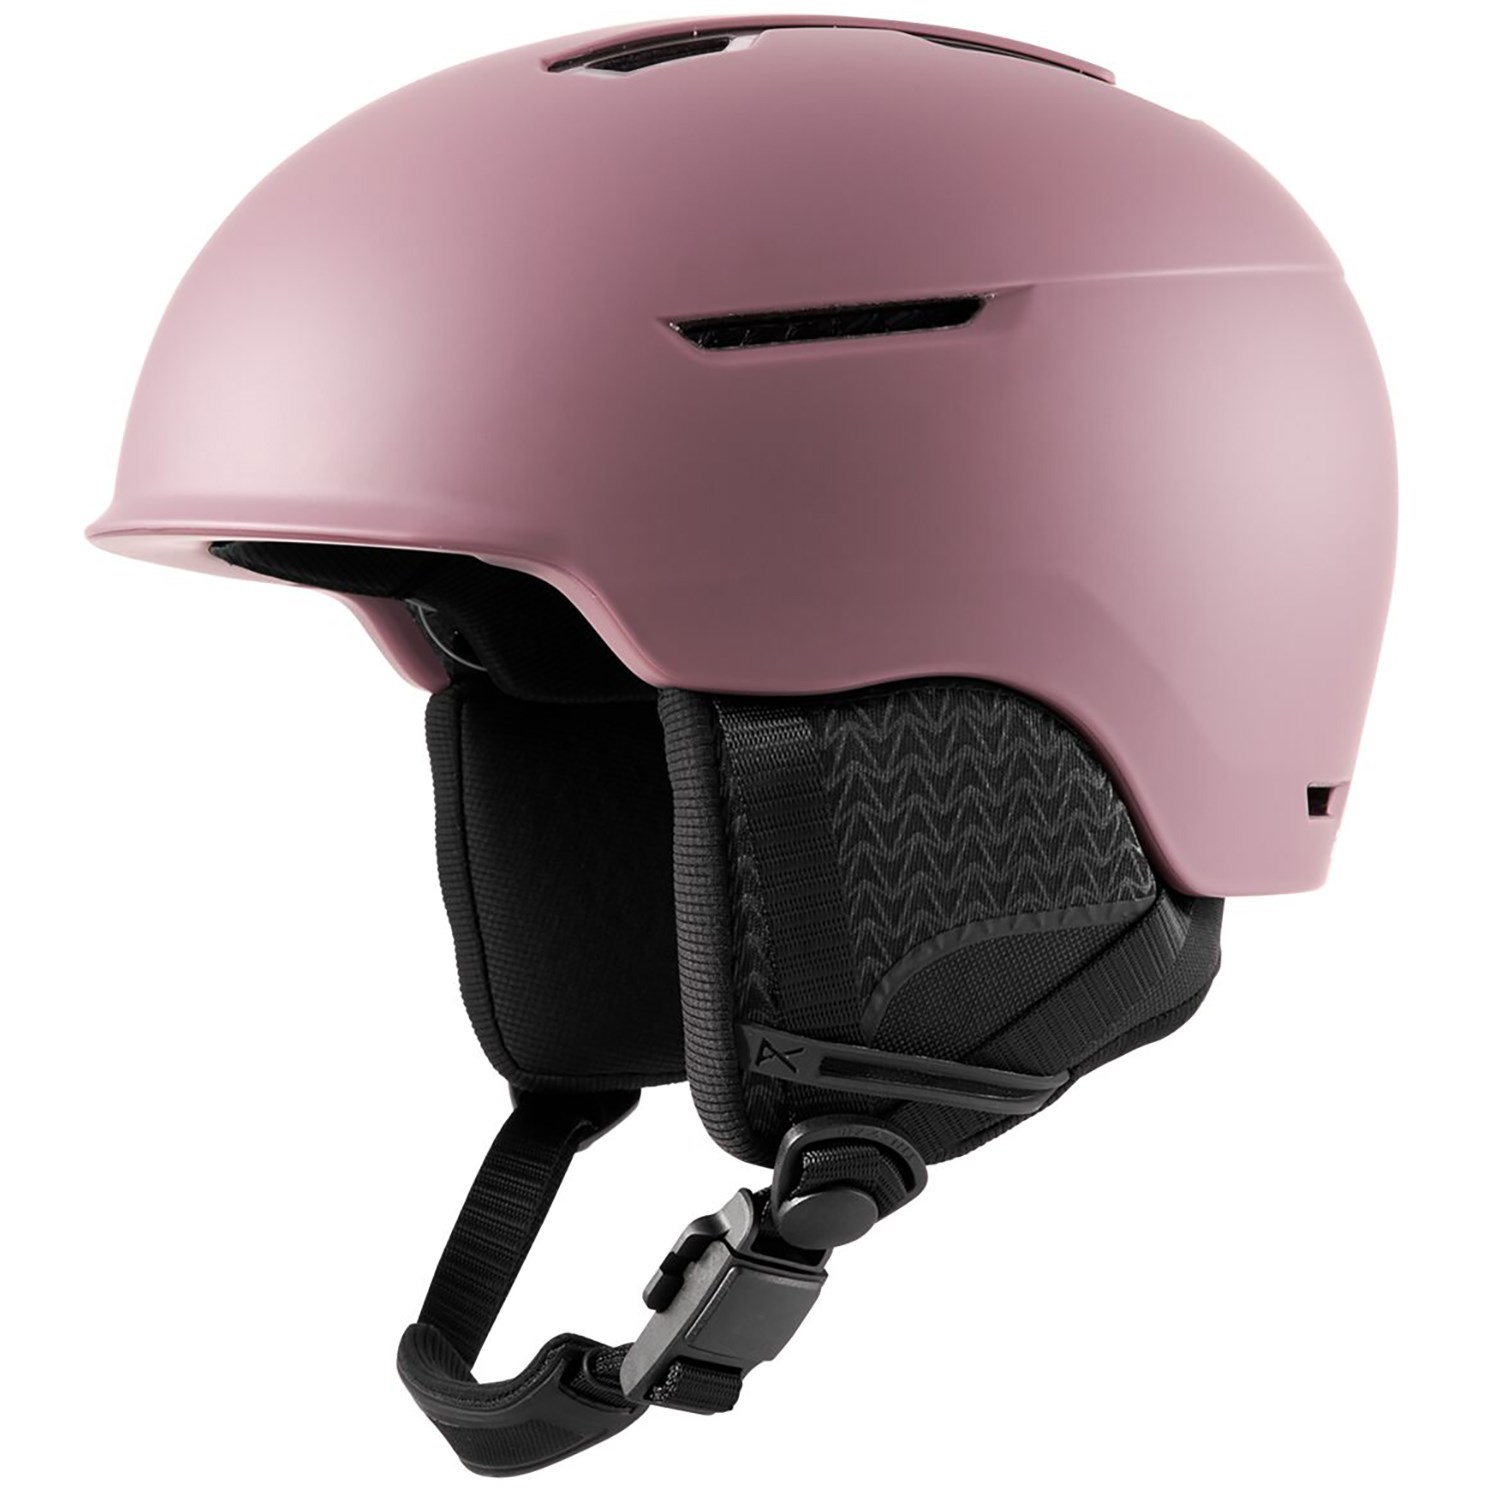 Лыжный шлем Logan WaveCel Anon, фиолетовый